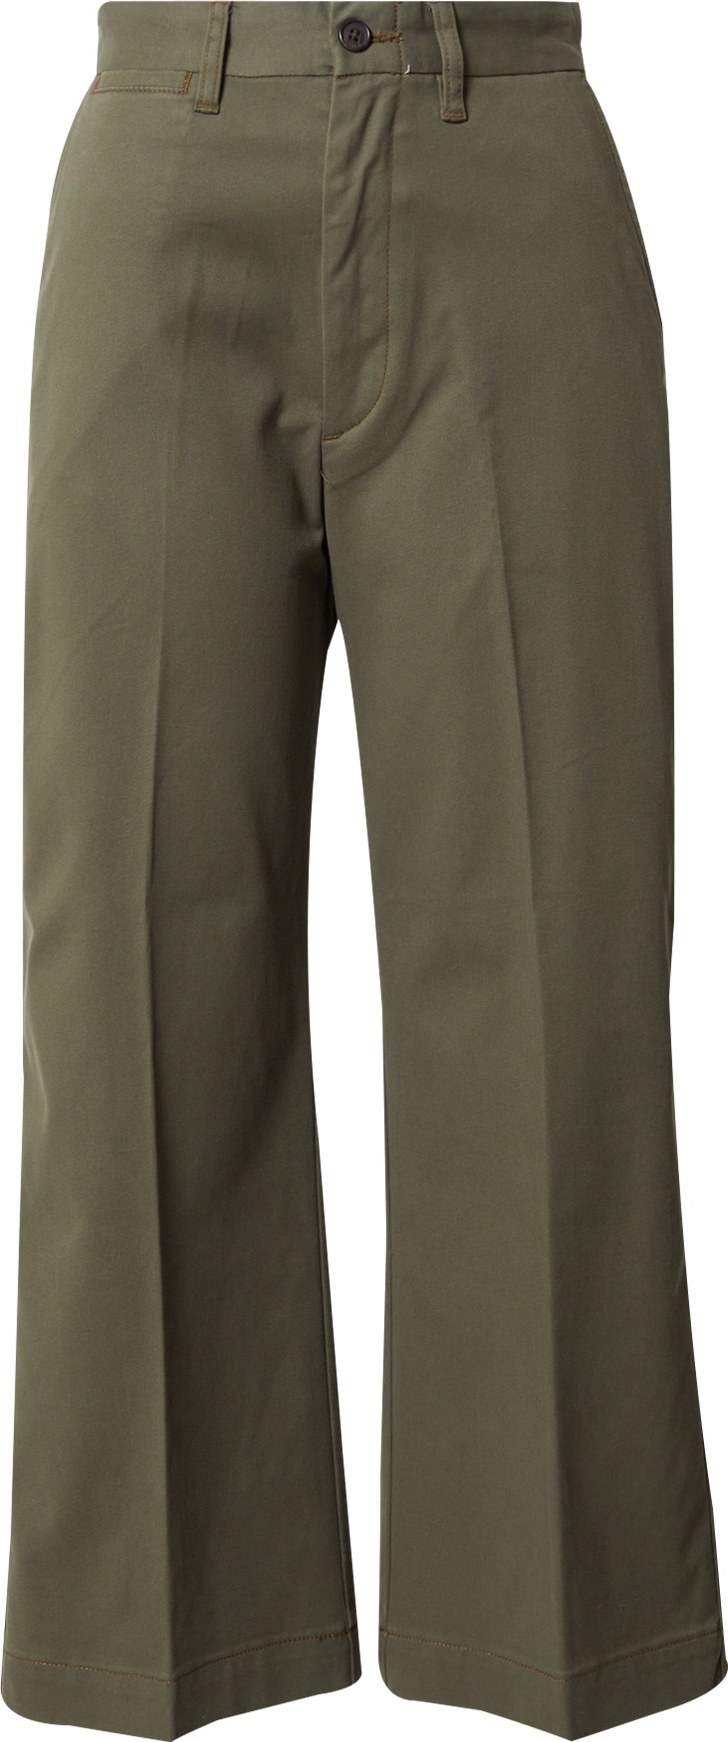 Kalhoty s puky Polo Ralph Lauren olivová